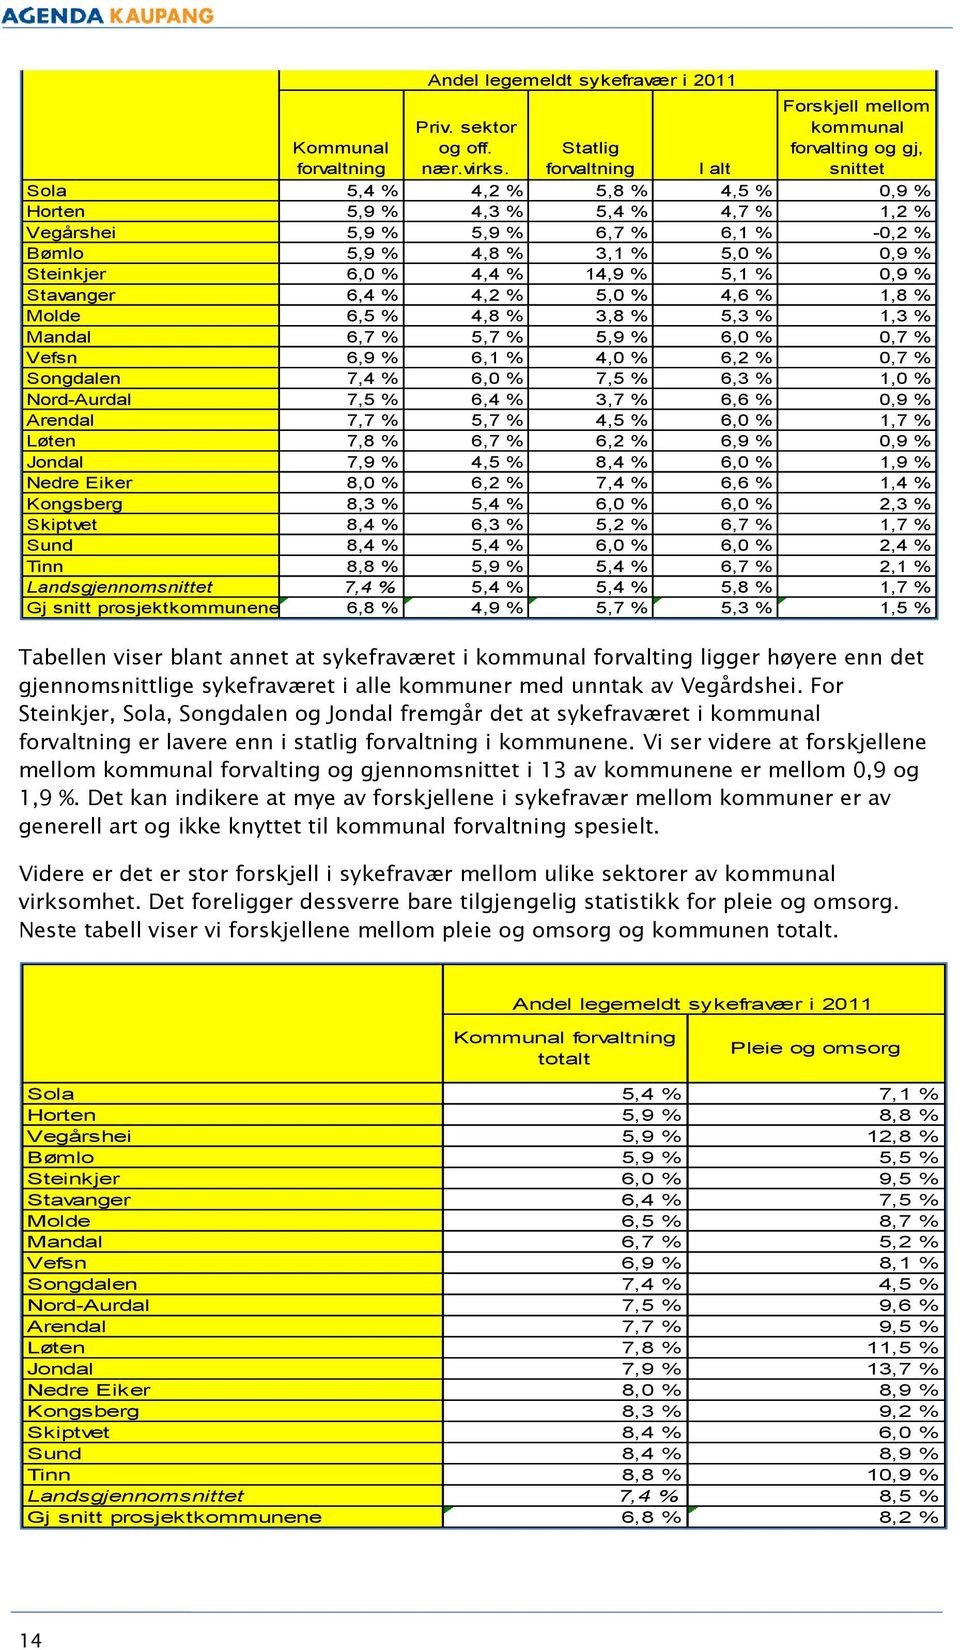 14,9 % 5,1 % 0,9 % Stavanger 6,4 % 4,2 % 5,0 % 4,6 % 1,8 % Molde 6,5 % 4,8 % 3,8 % 5,3 % 1,3 % Mandal 6,7 % 5,7 % 5,9 % 6,0 % 0,7 % Vefsn 6,9 % 6,1 % 4,0 % 6,2 % 0,7 % Songdalen 7,4 % 6,0 % 7,5 % 6,3